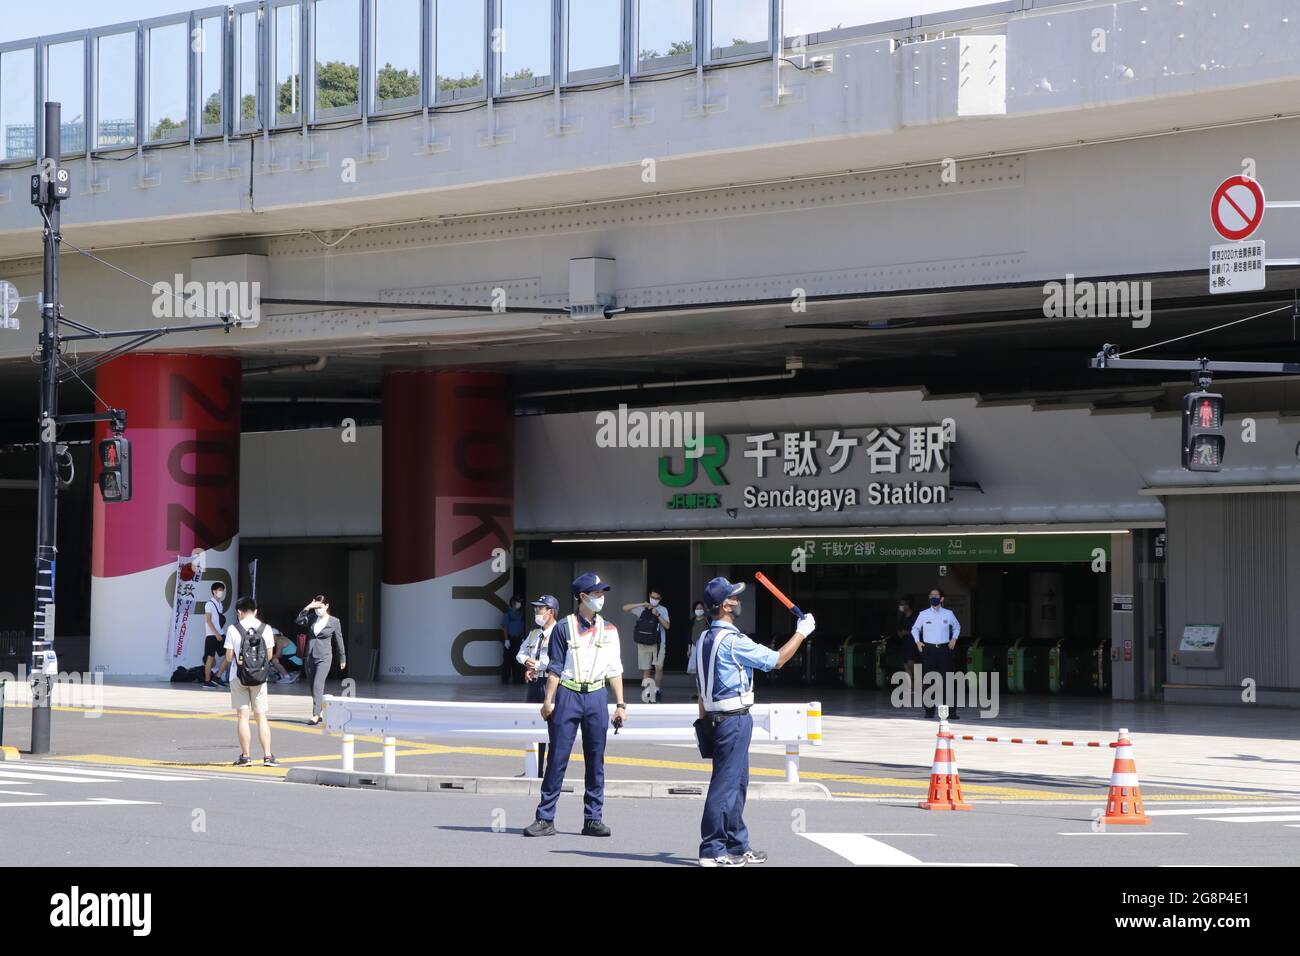 Gare de Sendagaya où se trouve la gare proche du Stade National, lieu principal des Jeux Olympiques de Tokyo en 2020. Tokyo, 22 juillet 2020. Banque D'Images